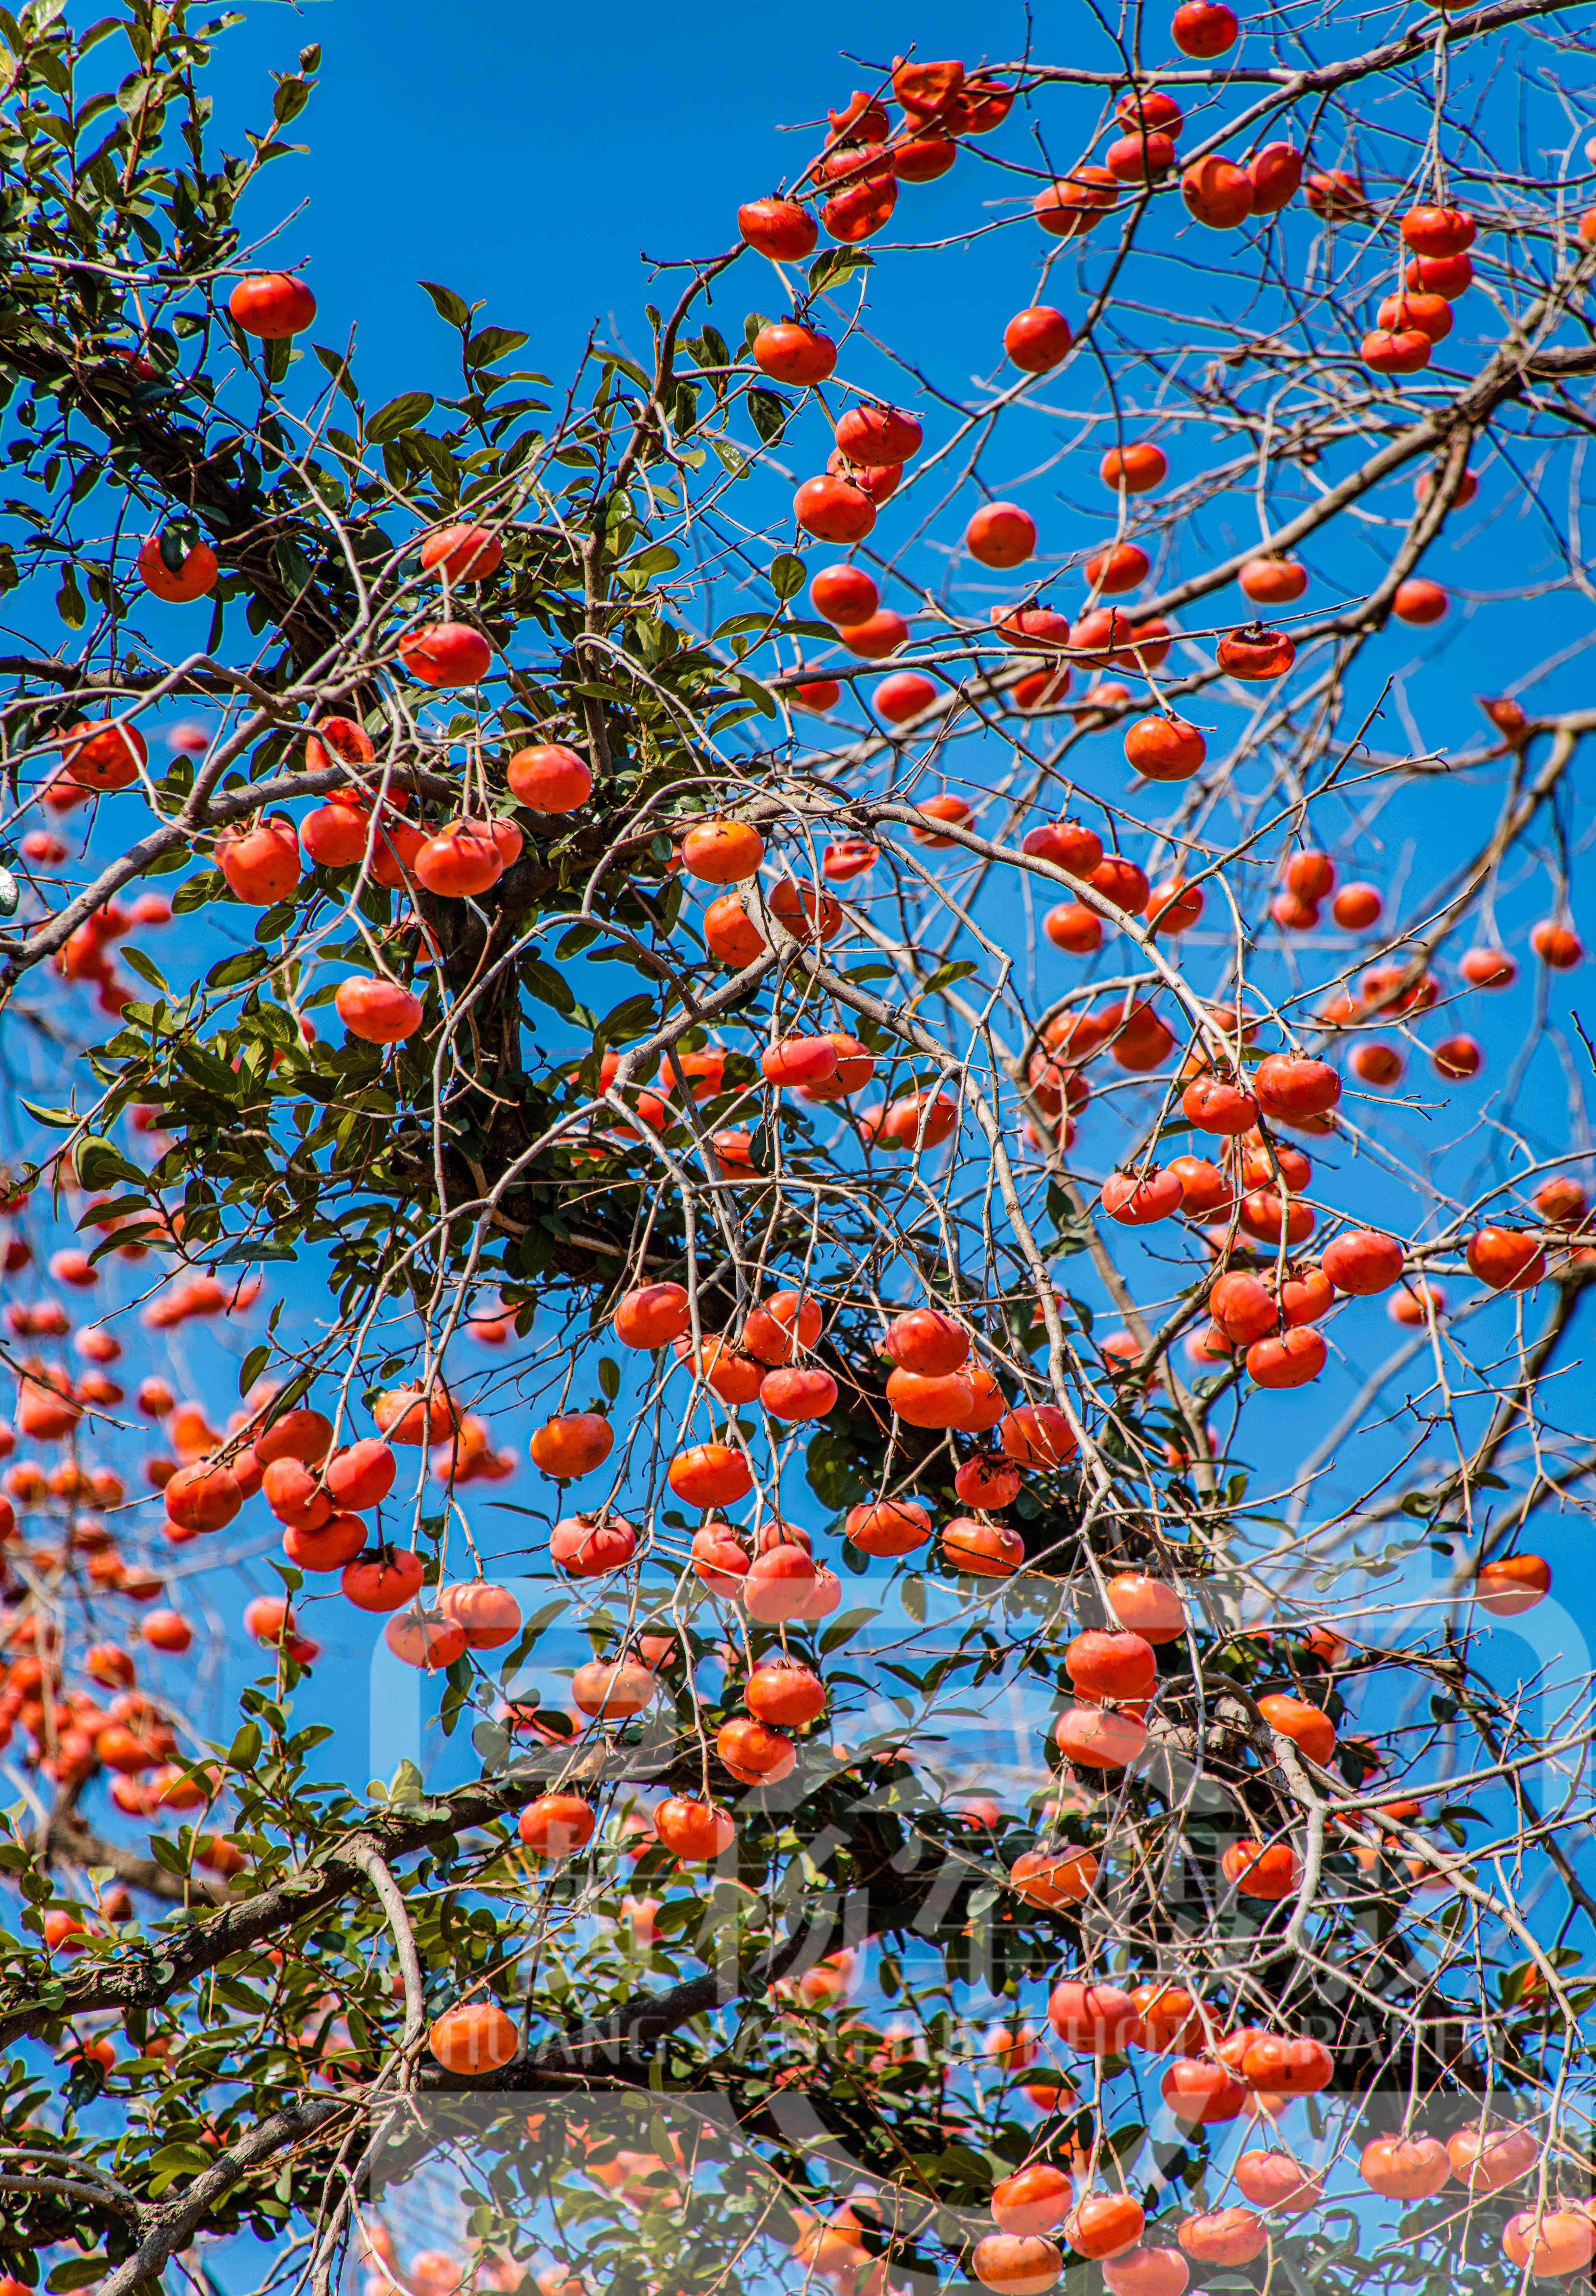 蓝天下的乡村果实,冬日橘红色的柿子熟悉迷人的美,深得人们喜爱